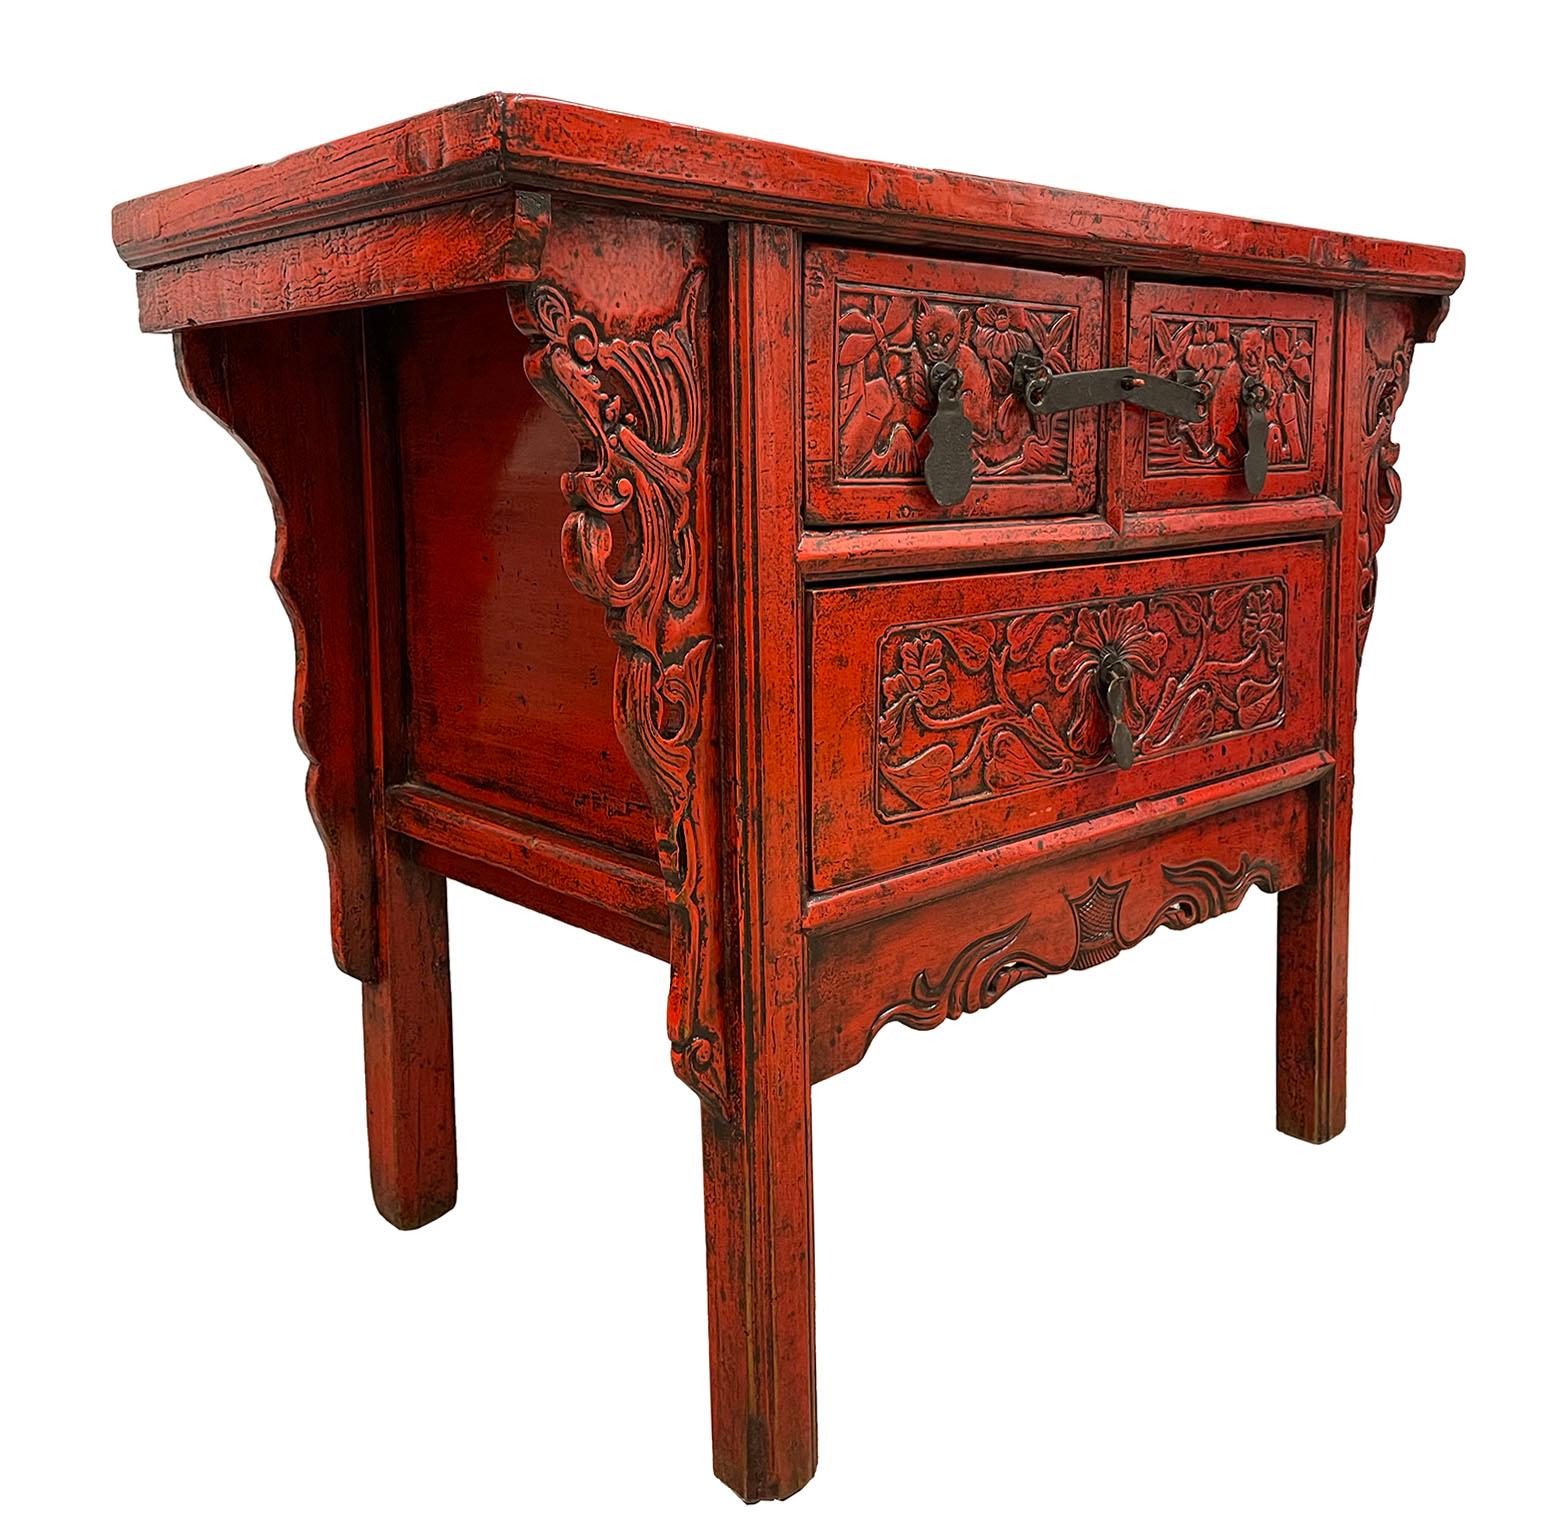 Dieser schöne antike chinesische Konsolentisch hat schöne traditionelle detaillierte tiefe/erhöhte Schnitzarbeiten an den vorderen Schubladenplatten und Beinen. Dieser Konsolentisch verfügt über 2 kleine Schubladen auf der Oberseite und 1 große